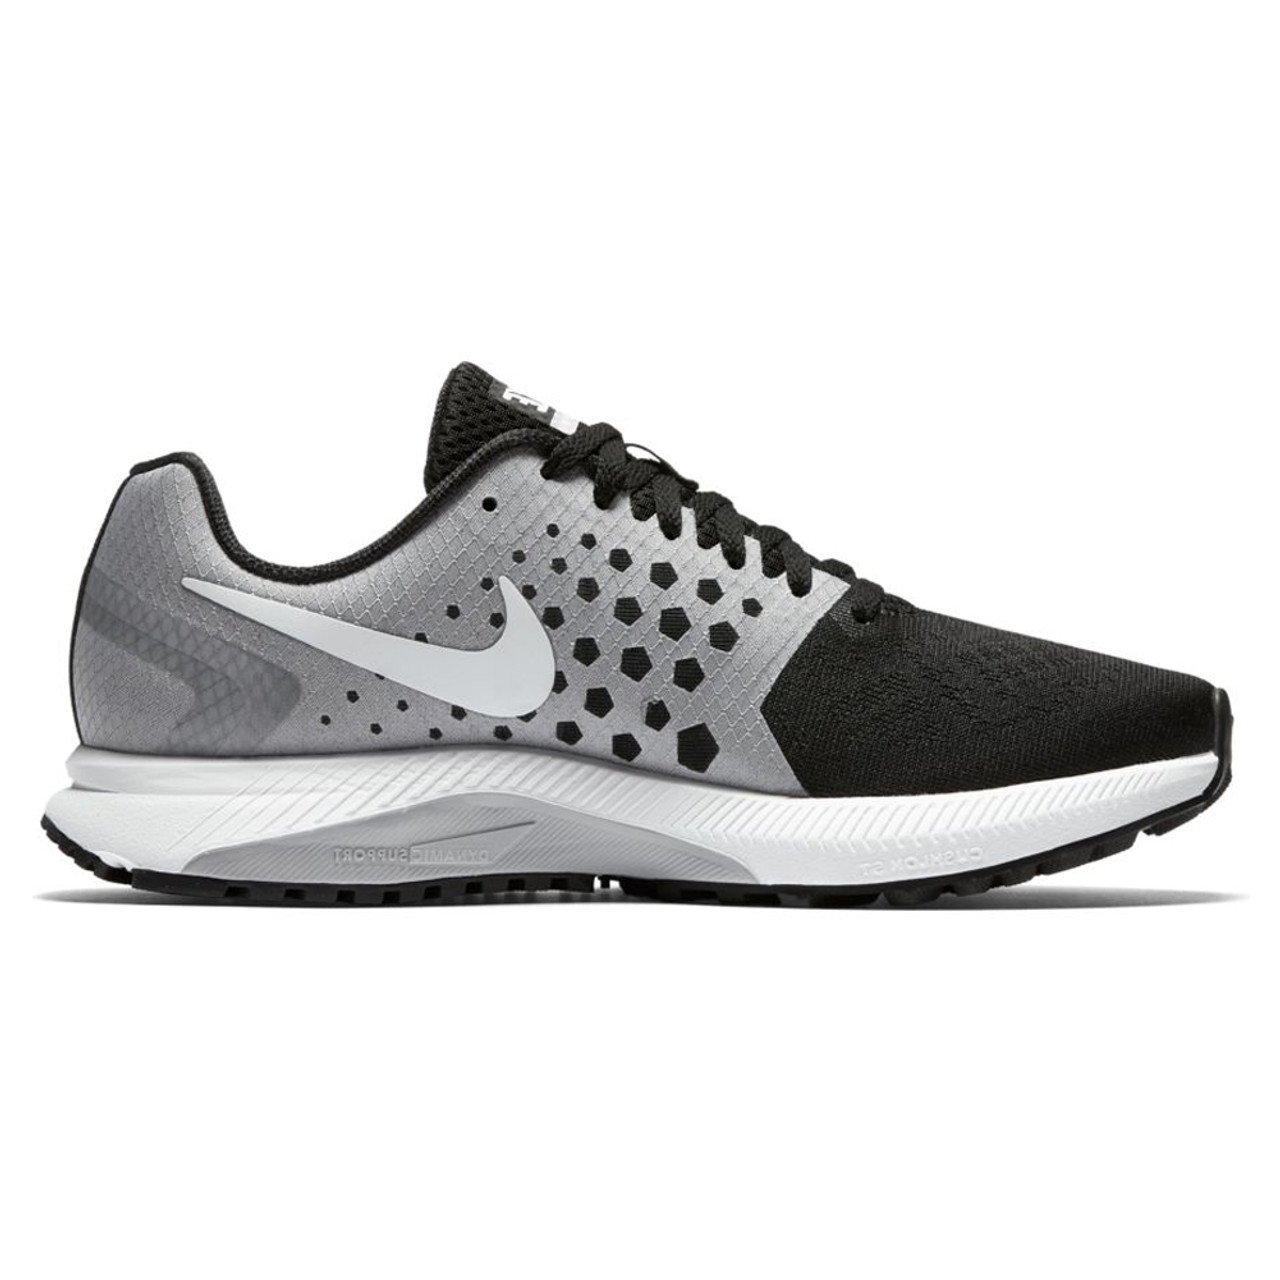 Nike Women's Air Zoom Span Running Shoe - Black | Discount Nike Ladies  Athletic & More - Shoolu.com | Shoolu.com